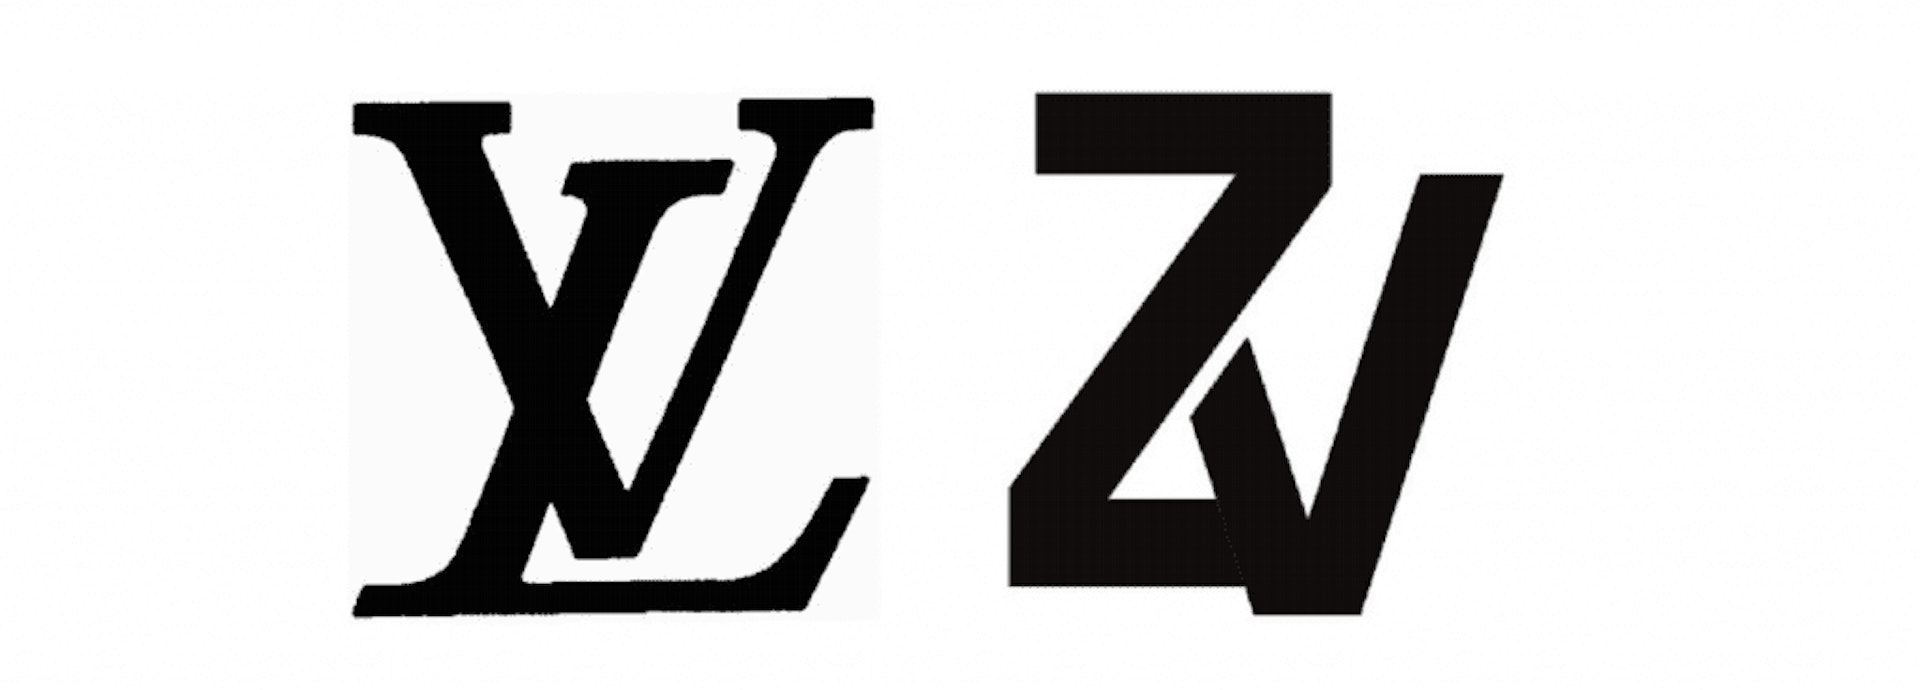 左邊是Louis Vuitton商標，右邊是Zadig & Voltaire商標。